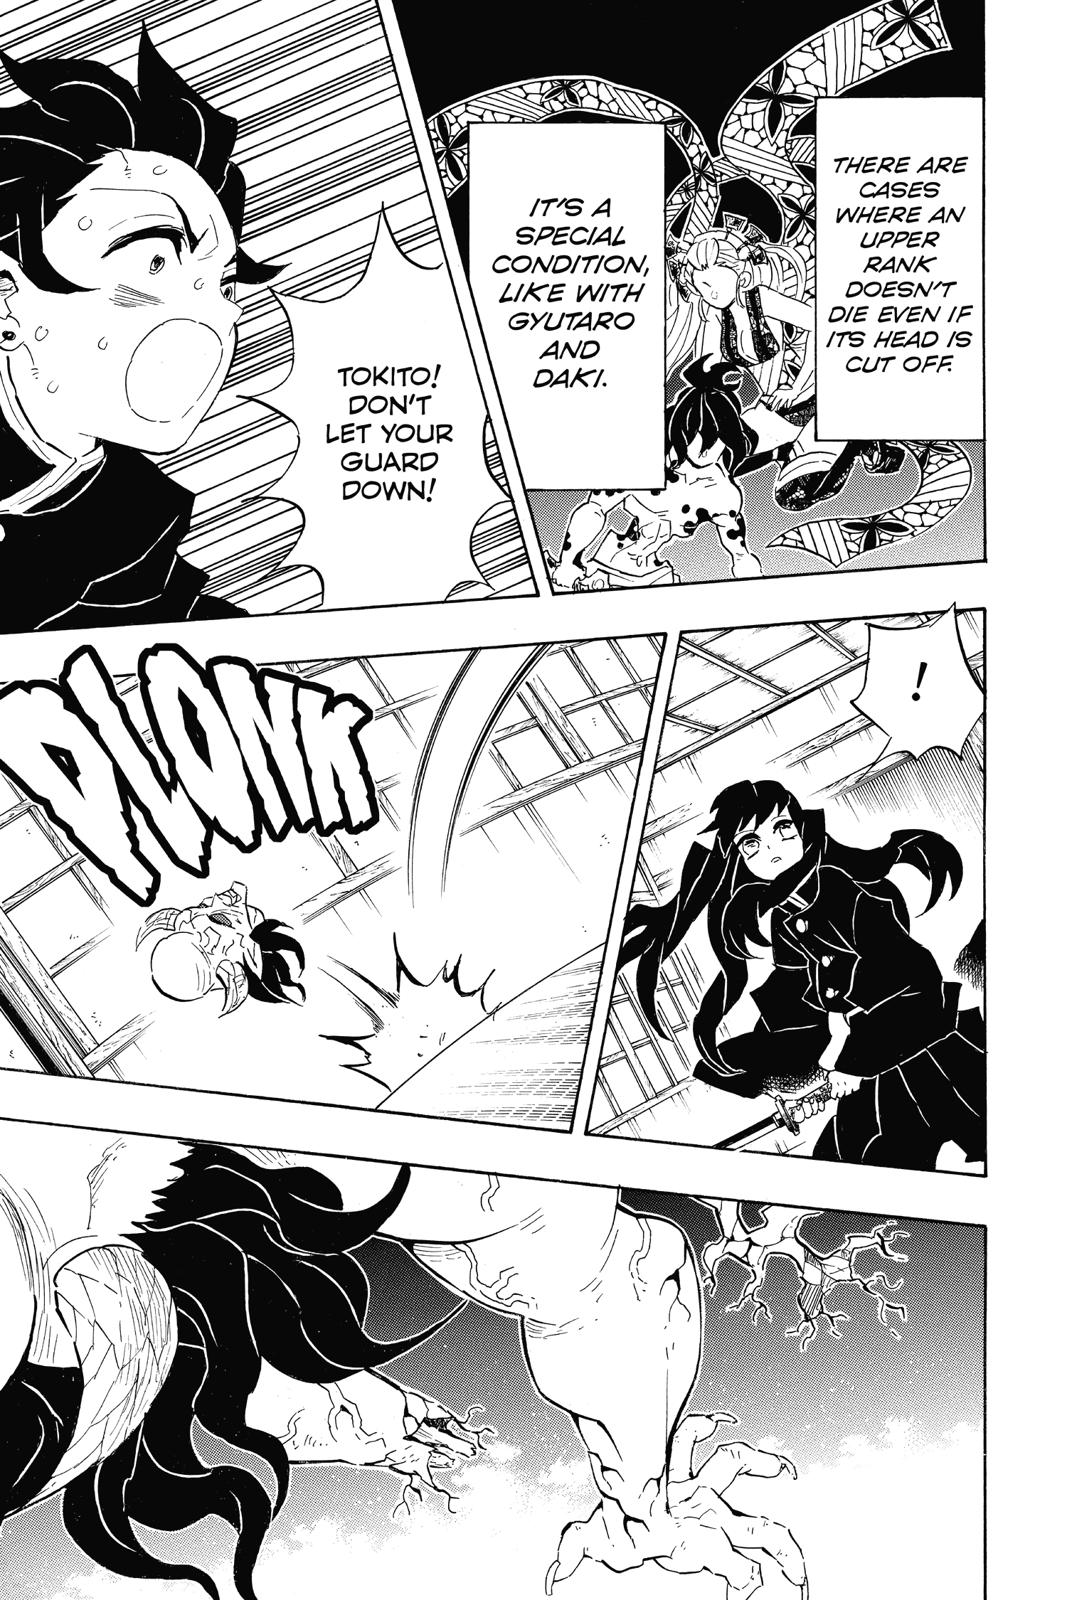 Demon Slayer Manga Manga Chapter - 106 - image 11